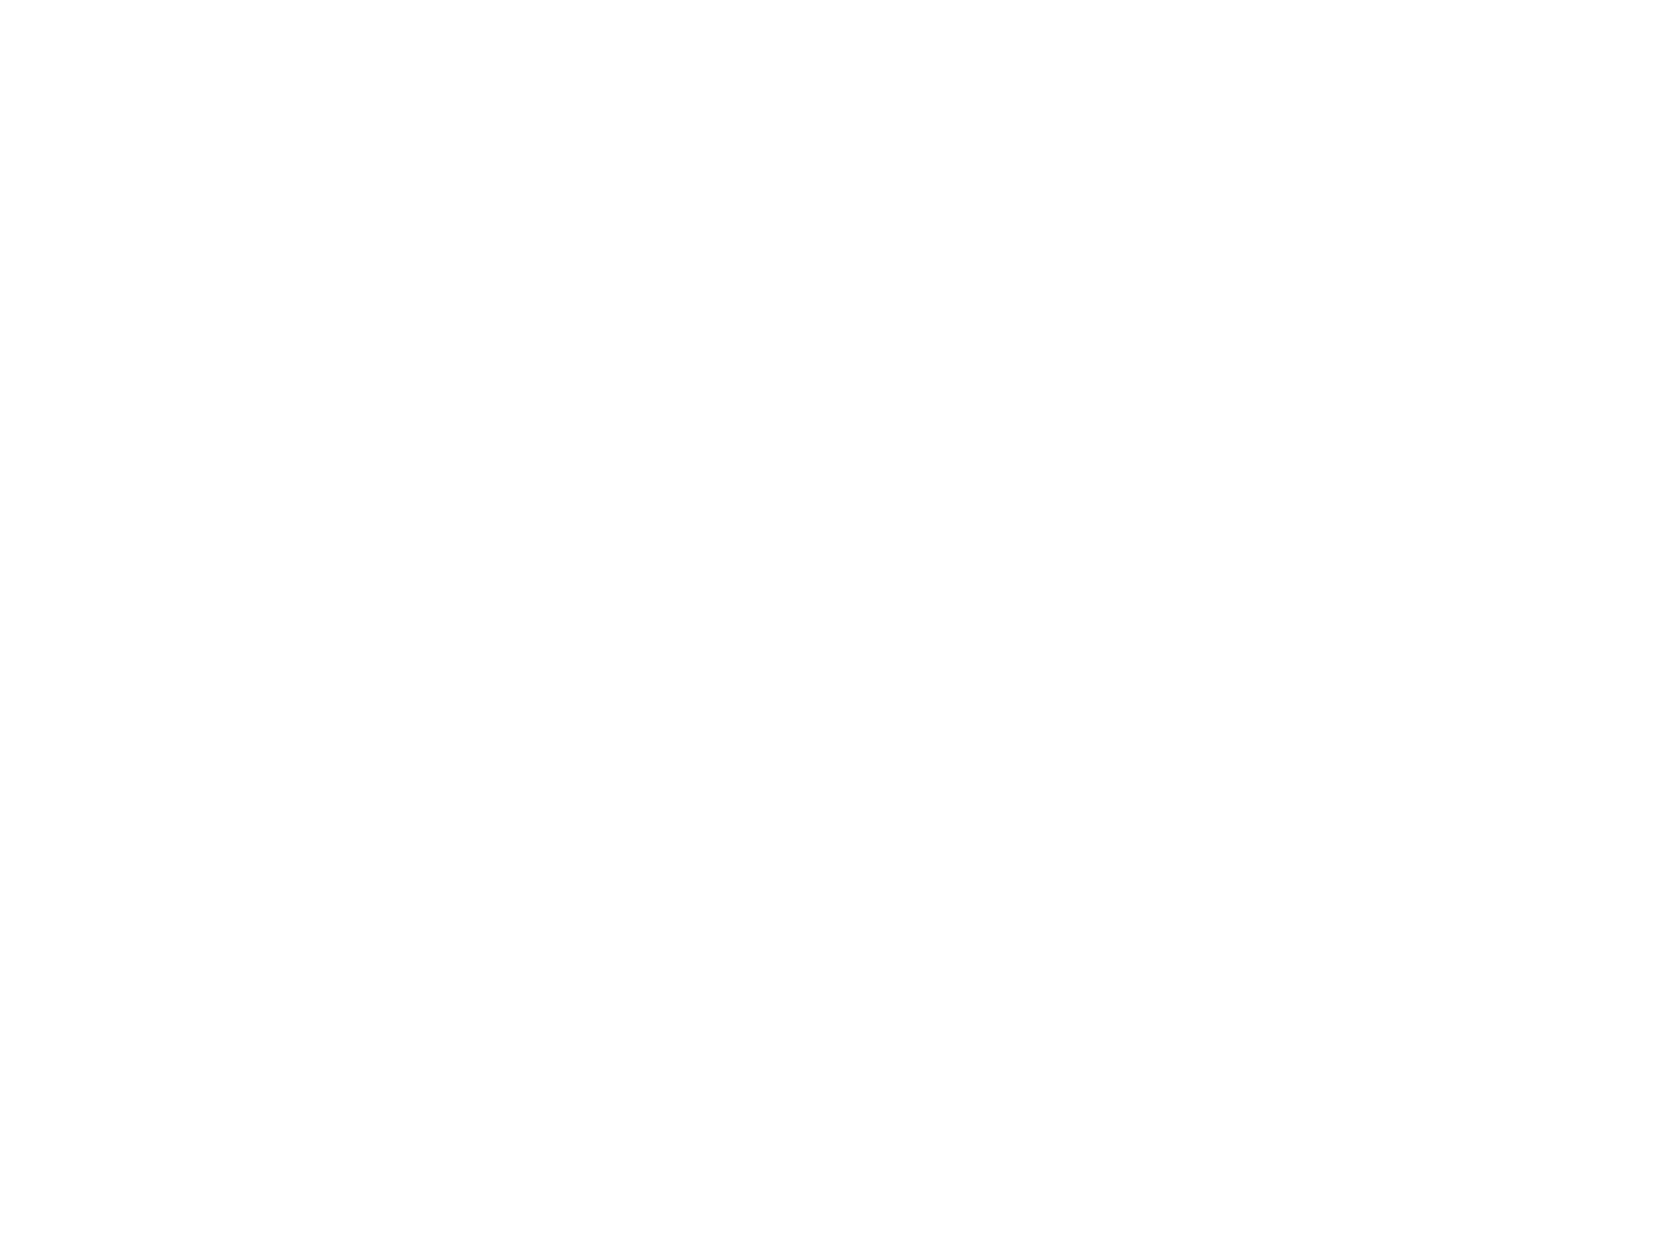 Kpg graphics